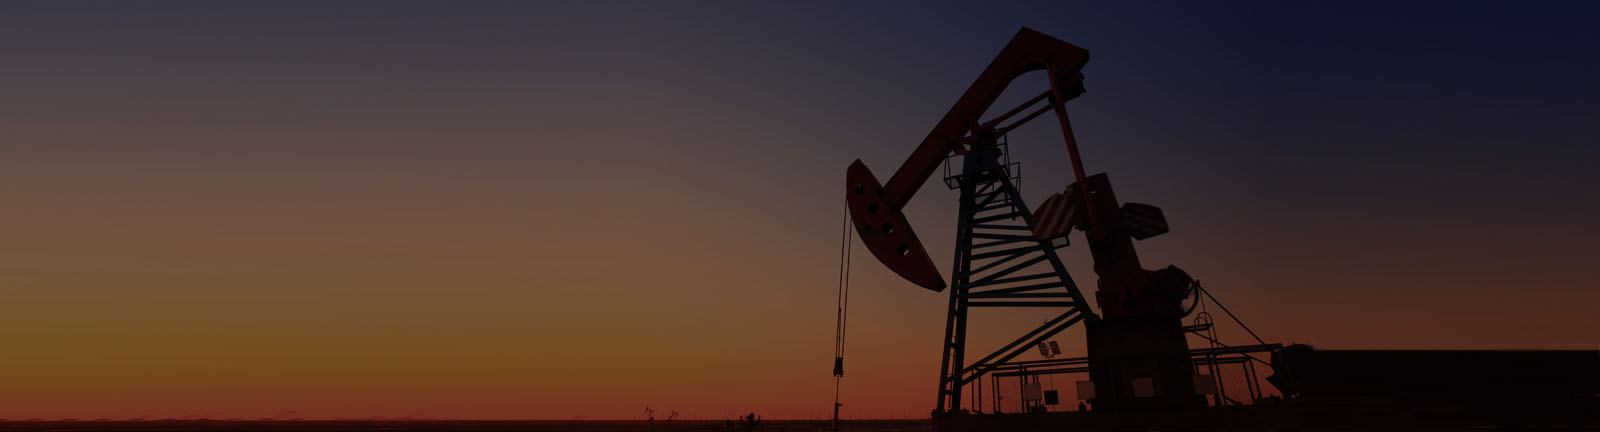 Oil to non-oil: Saudi Arabia’s changing economic landscape